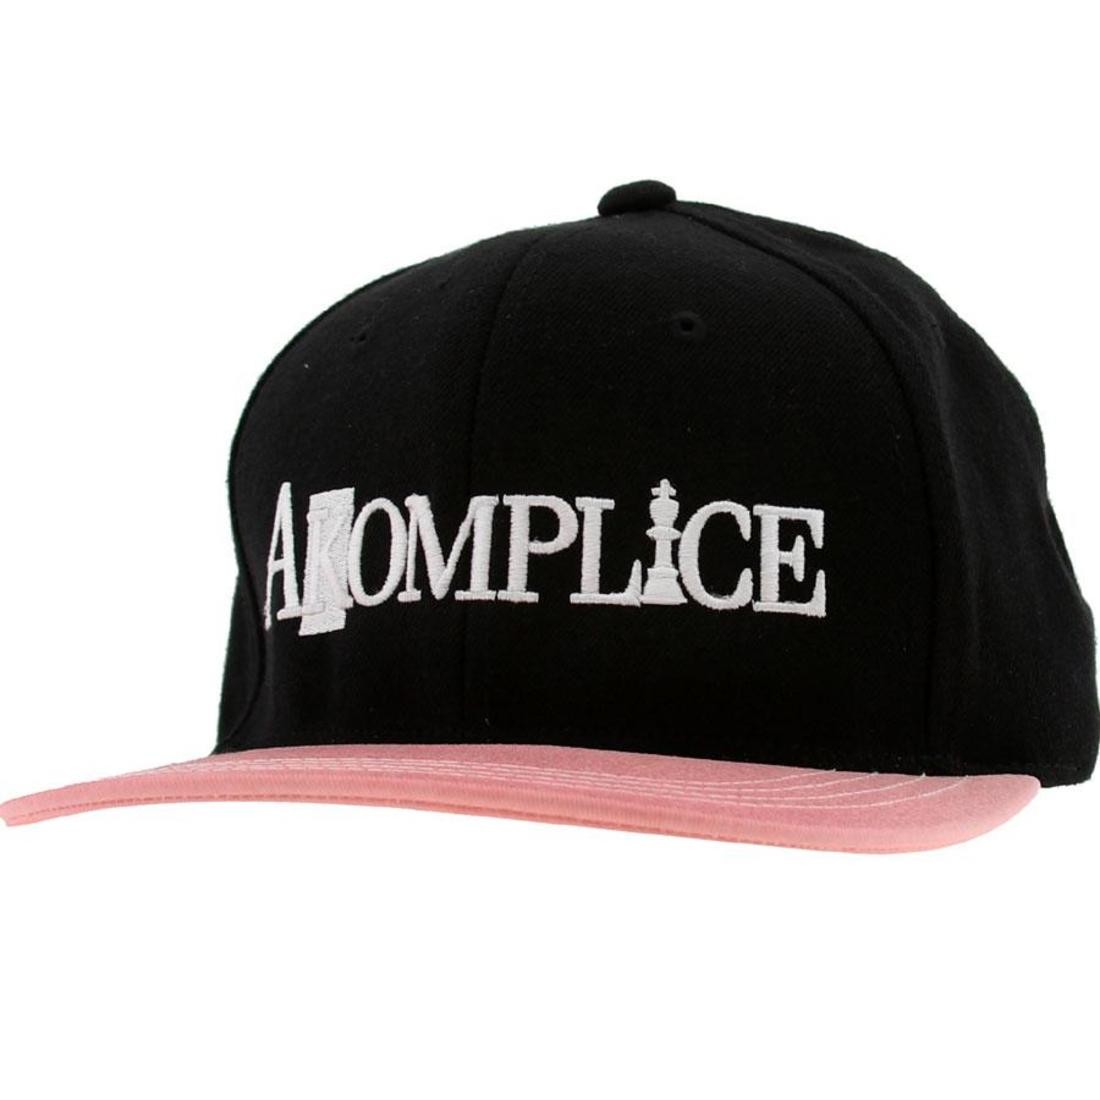 Akomplice Sunny Daze Color Change Snapback Cap (black / red)